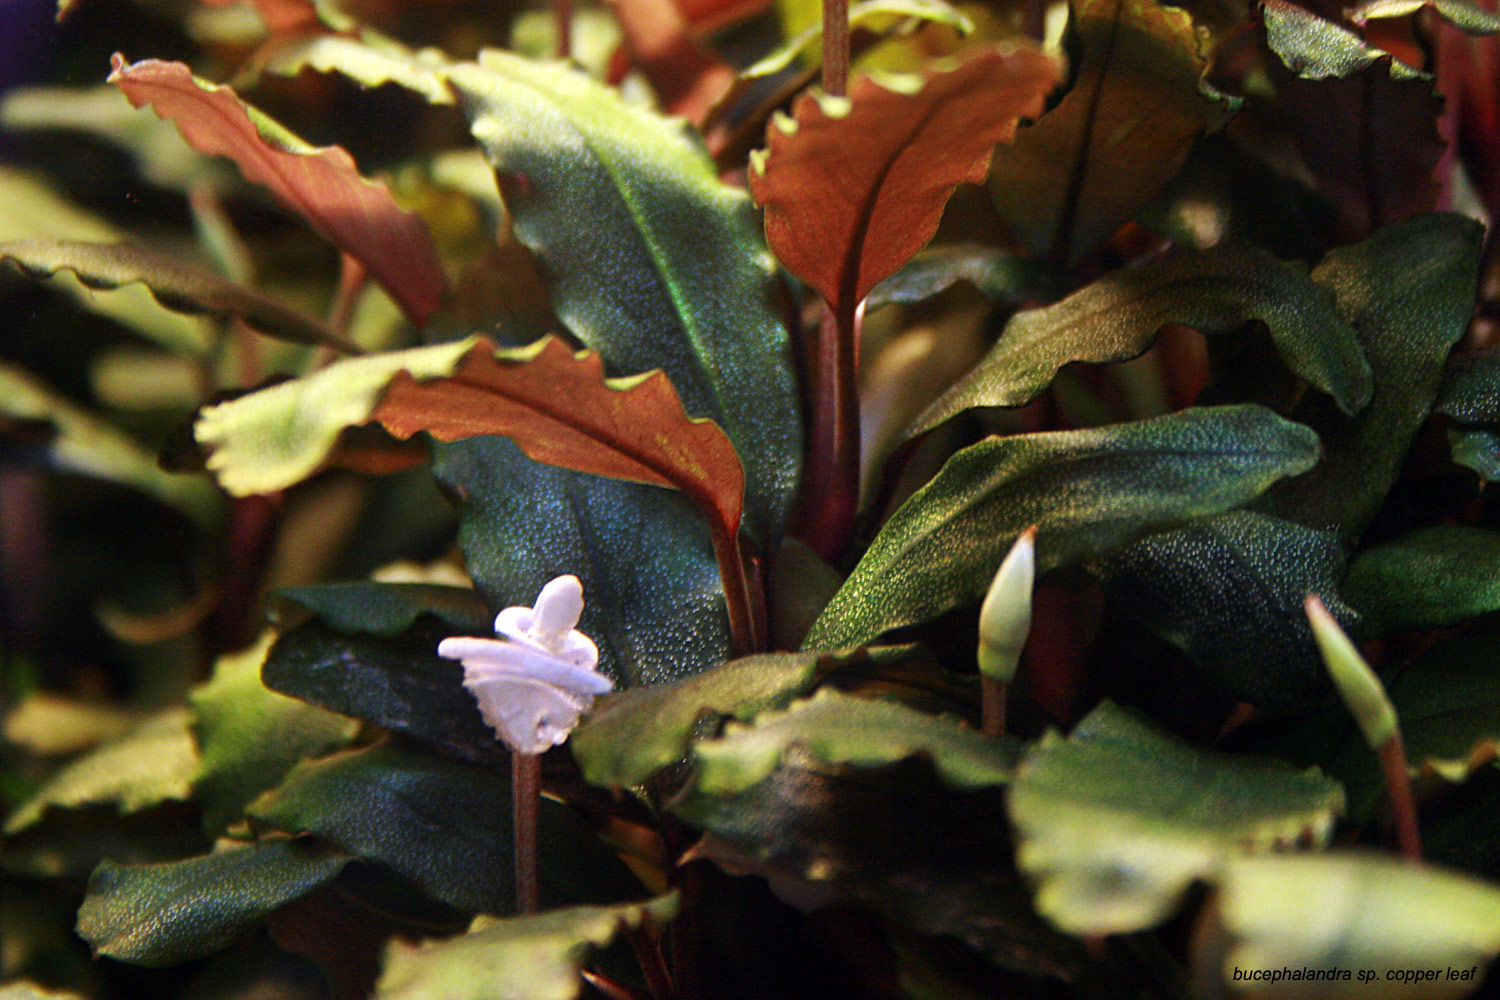 Картинки по запросу bucephalandra sp. copper leaf melawi west kalimantan